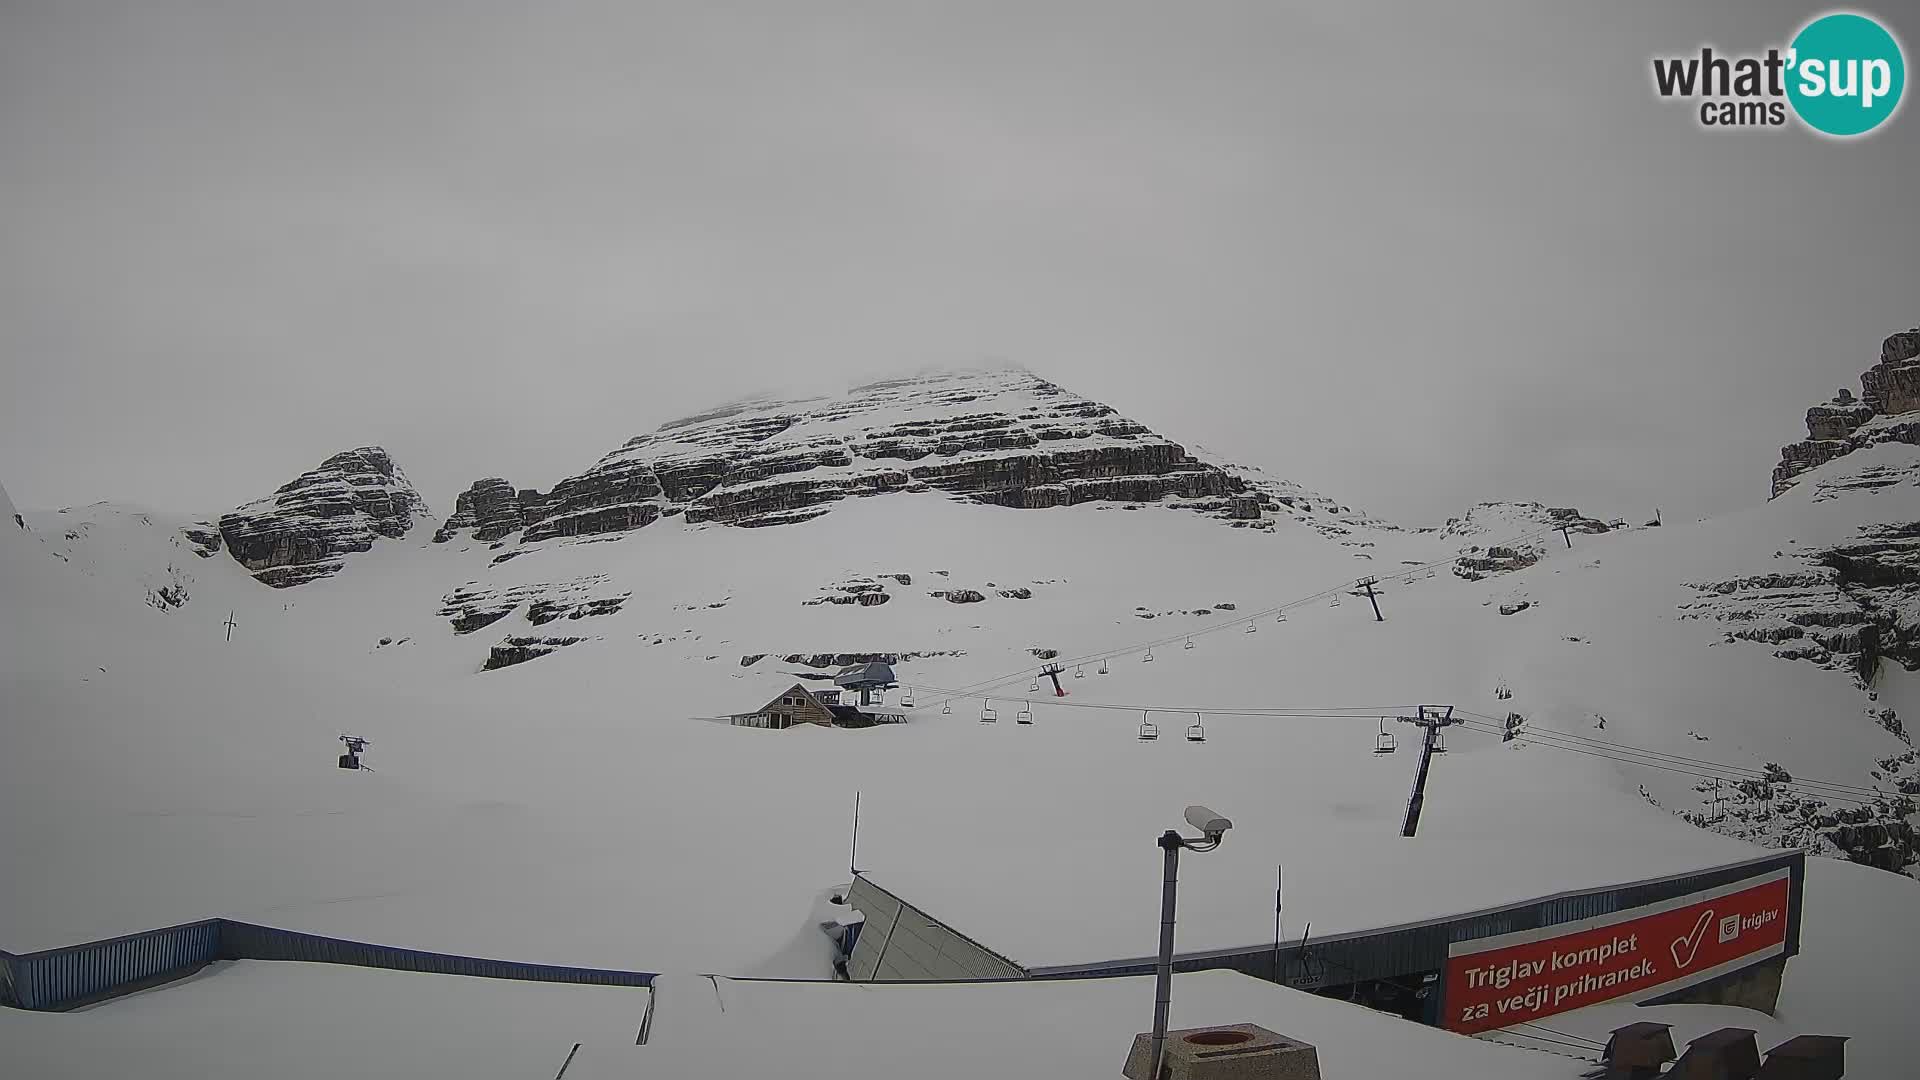 Estación de esquí Kanin – Prestreljenik